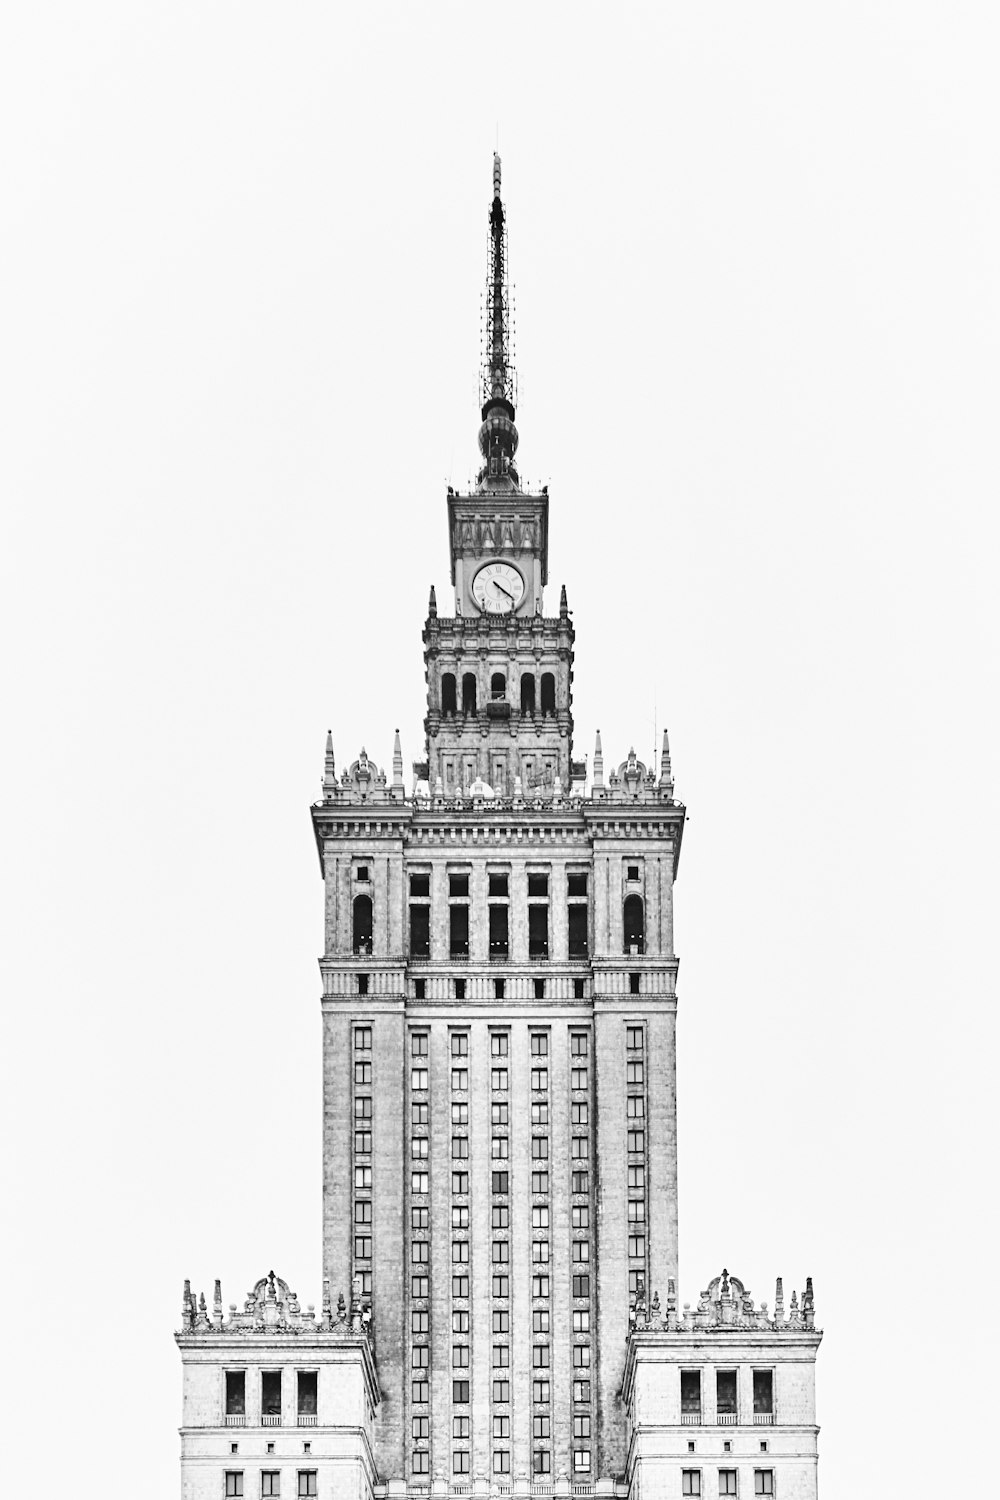 foto in scala di grigi dell'orologio della torre in cemento gotico